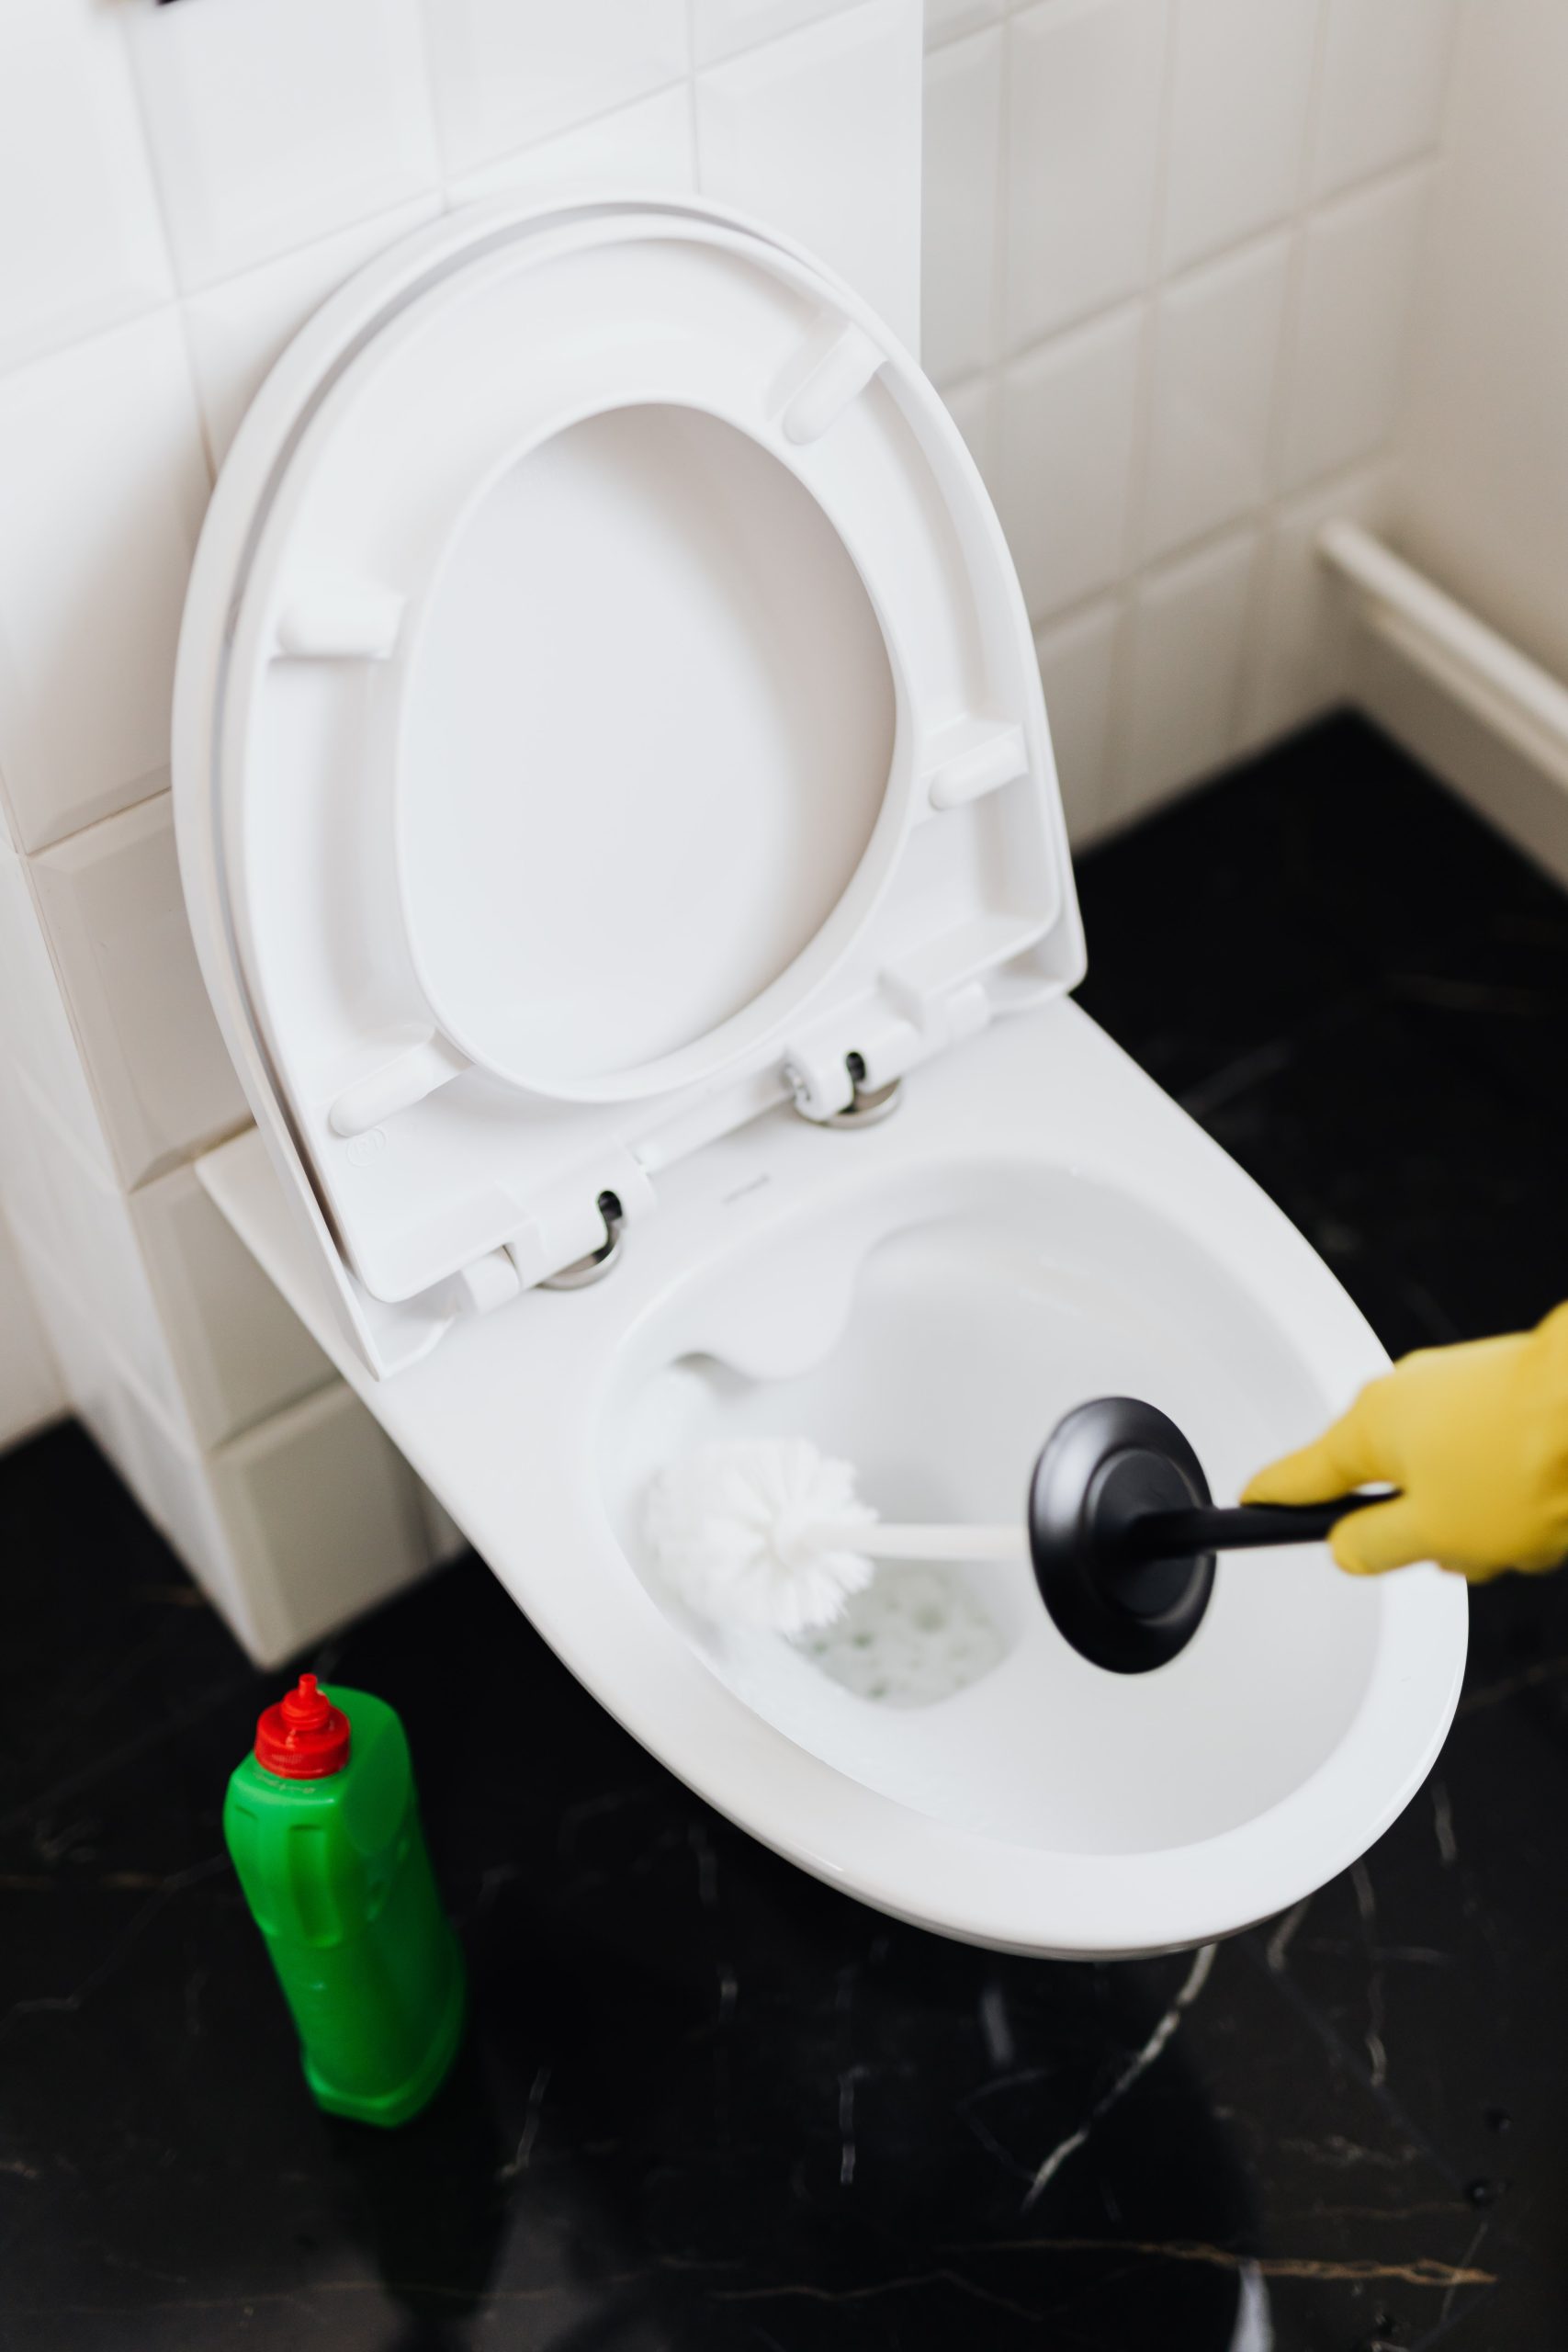 5 bonnes raisons d'utiliser un désinfectant pour siège WC